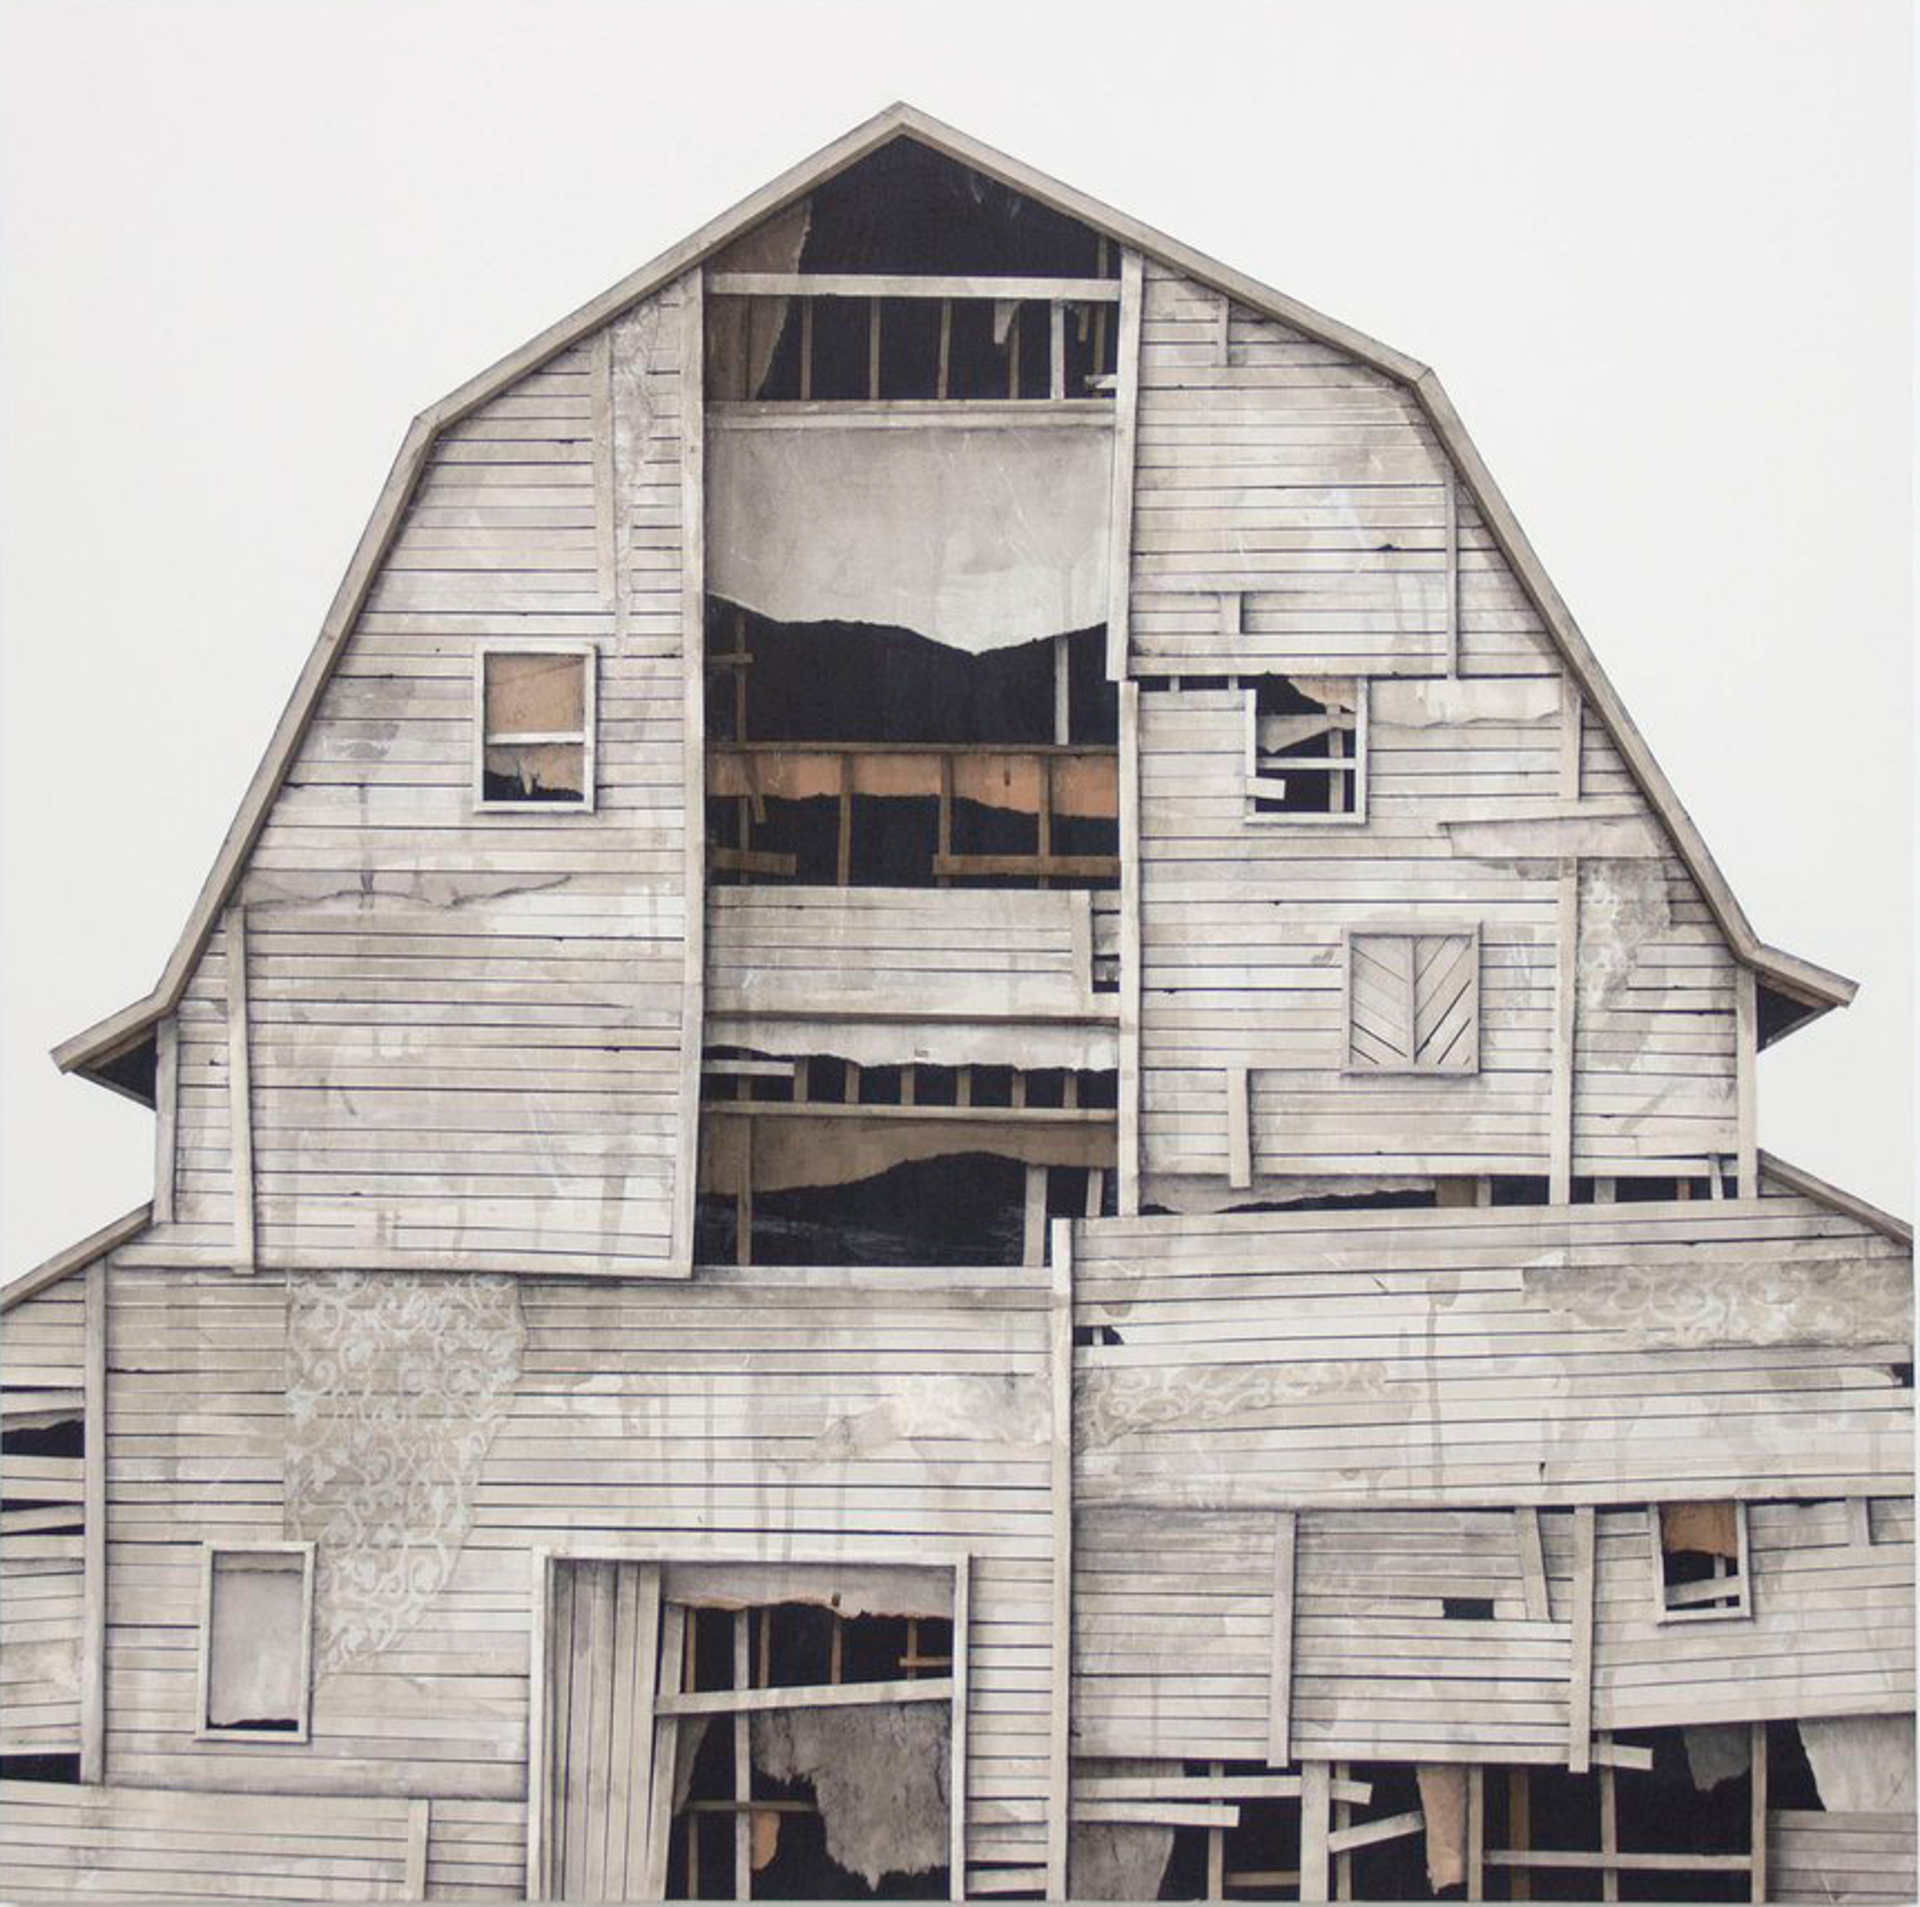 Barn Study VII by Seth Clark